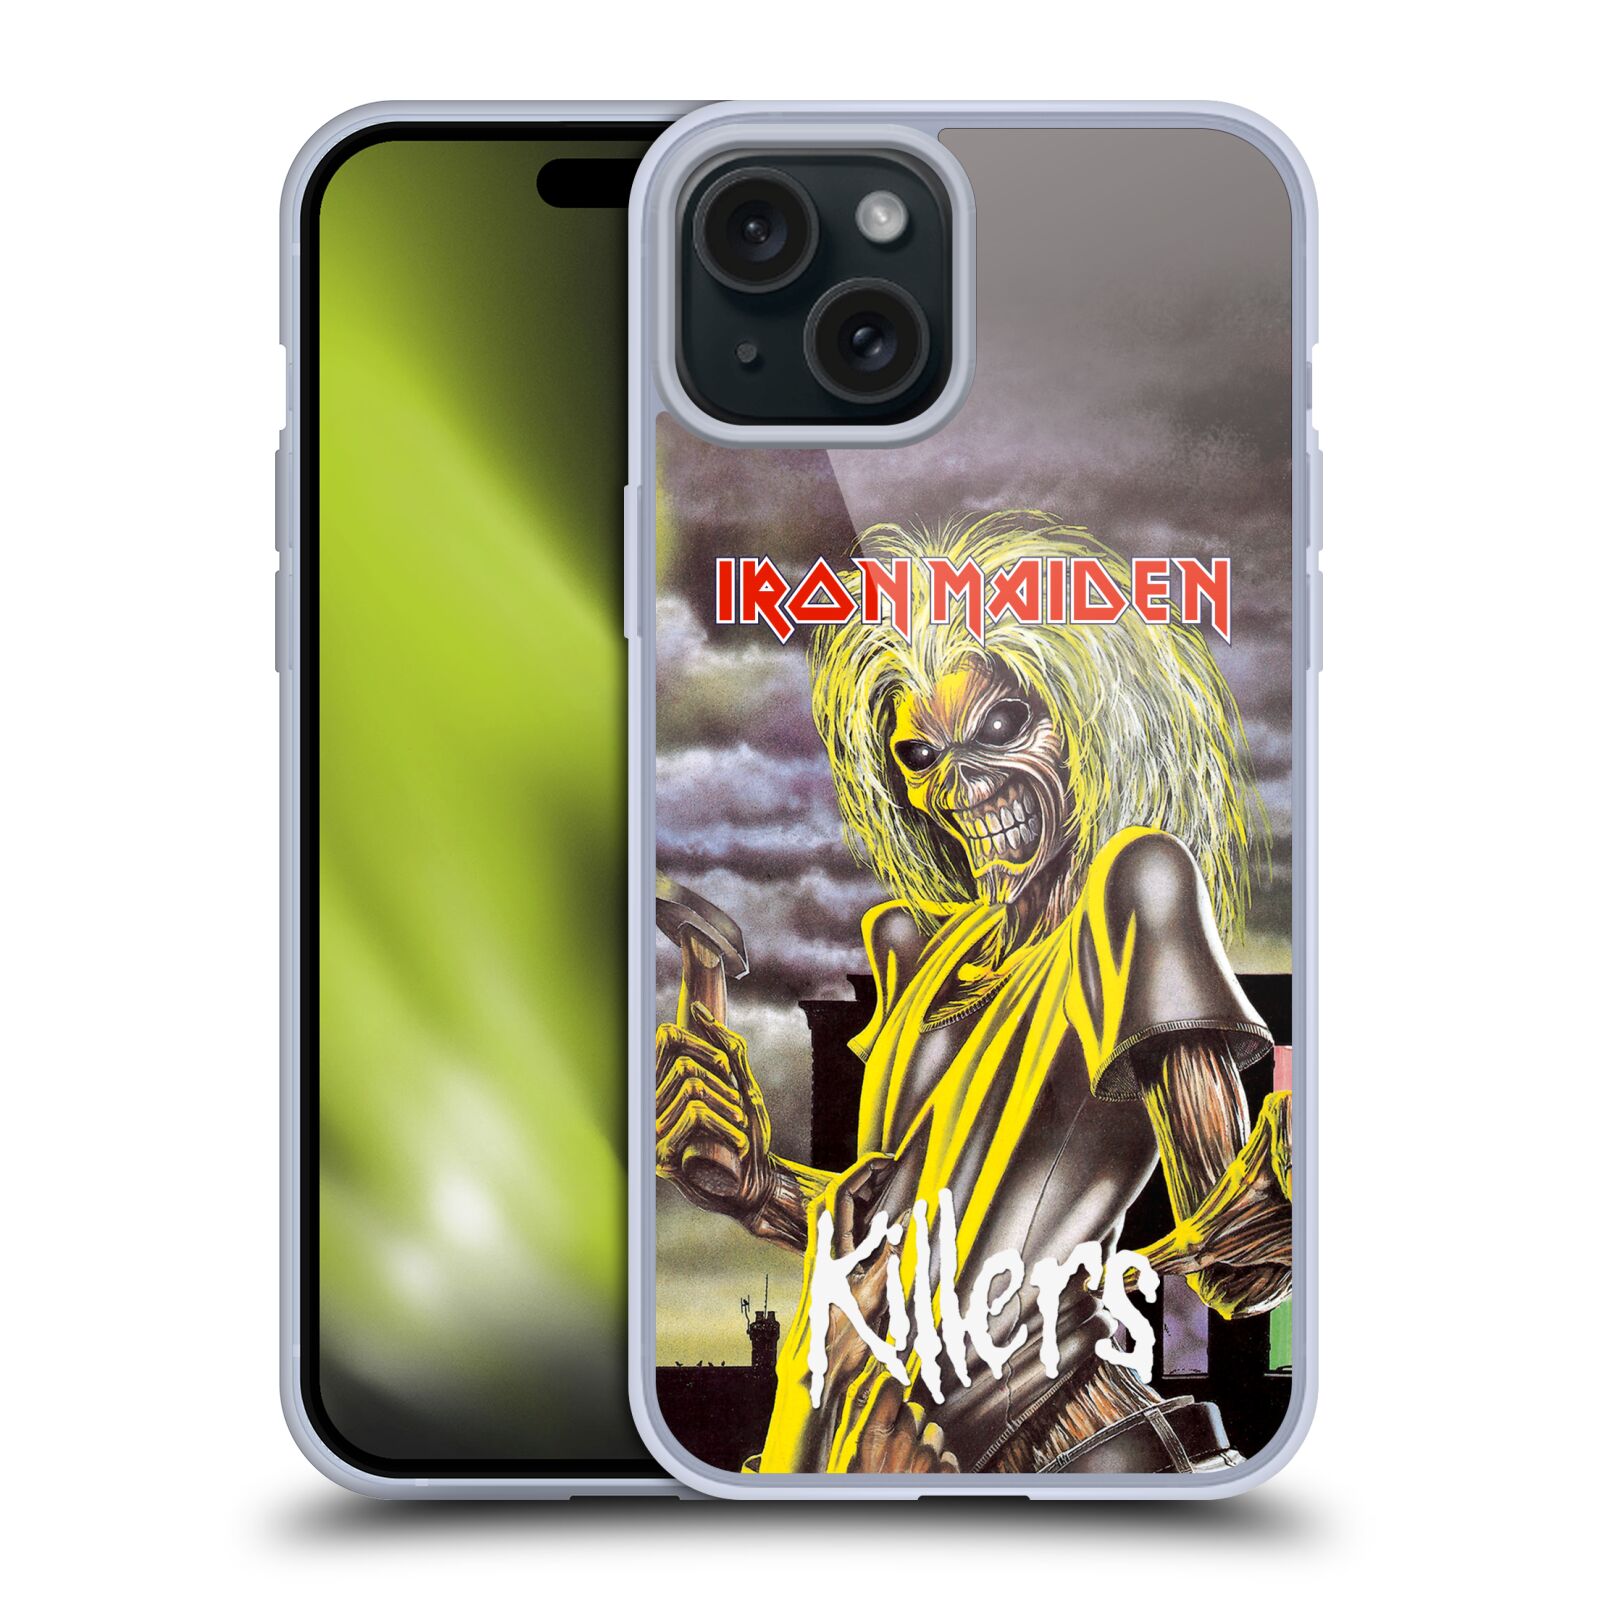 Silikonové lesklé pouzdro na mobil Apple iPhone 15 Plus - Head Case - Iron Maiden - Killers (Silikonový lesklý kryt, obal, pouzdro na mobilní telefon Apple iPhone 15 Plus s motivem Iron Maiden - Killers)